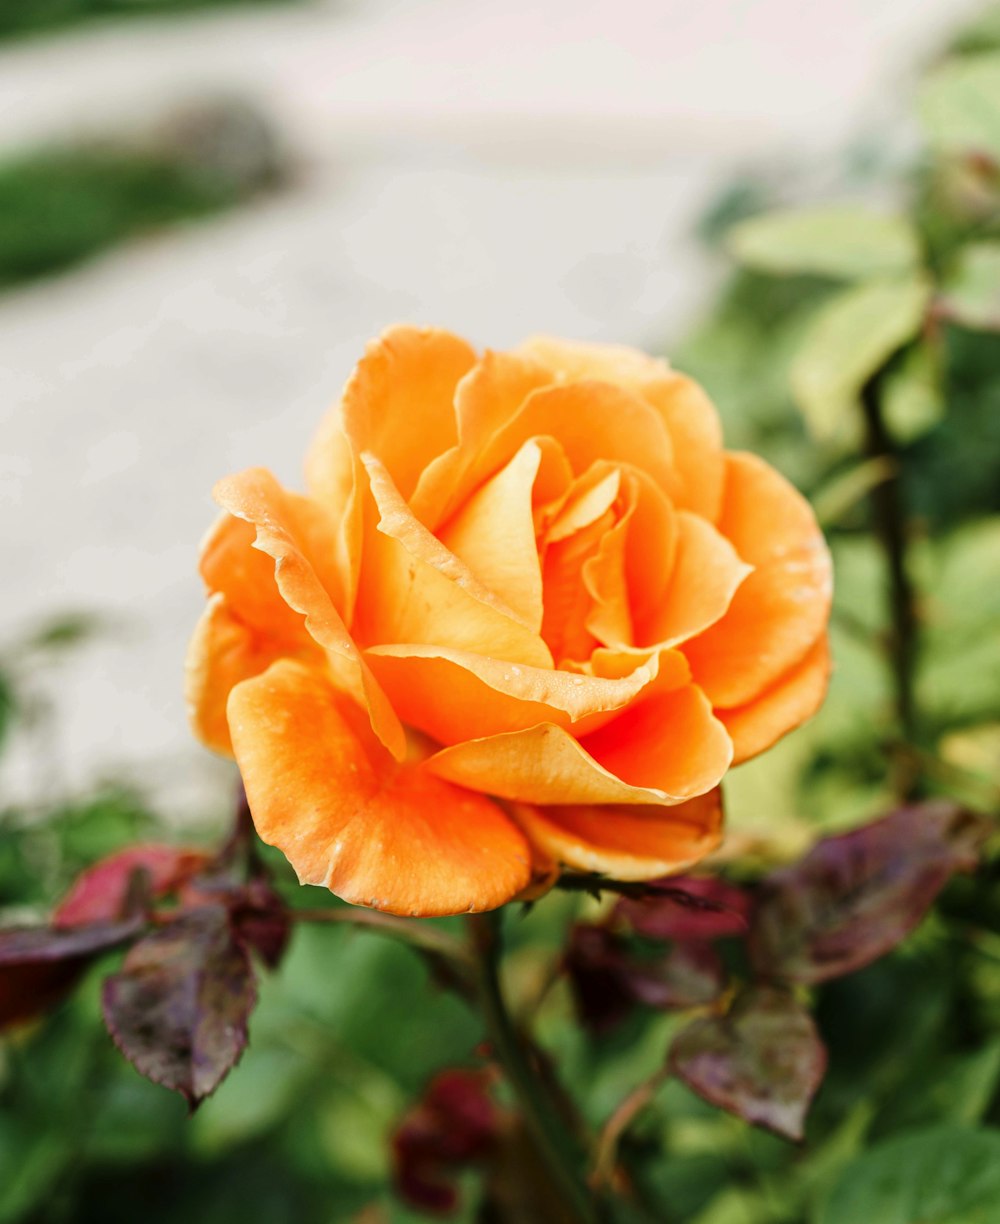 orange rose in bloom during daytime